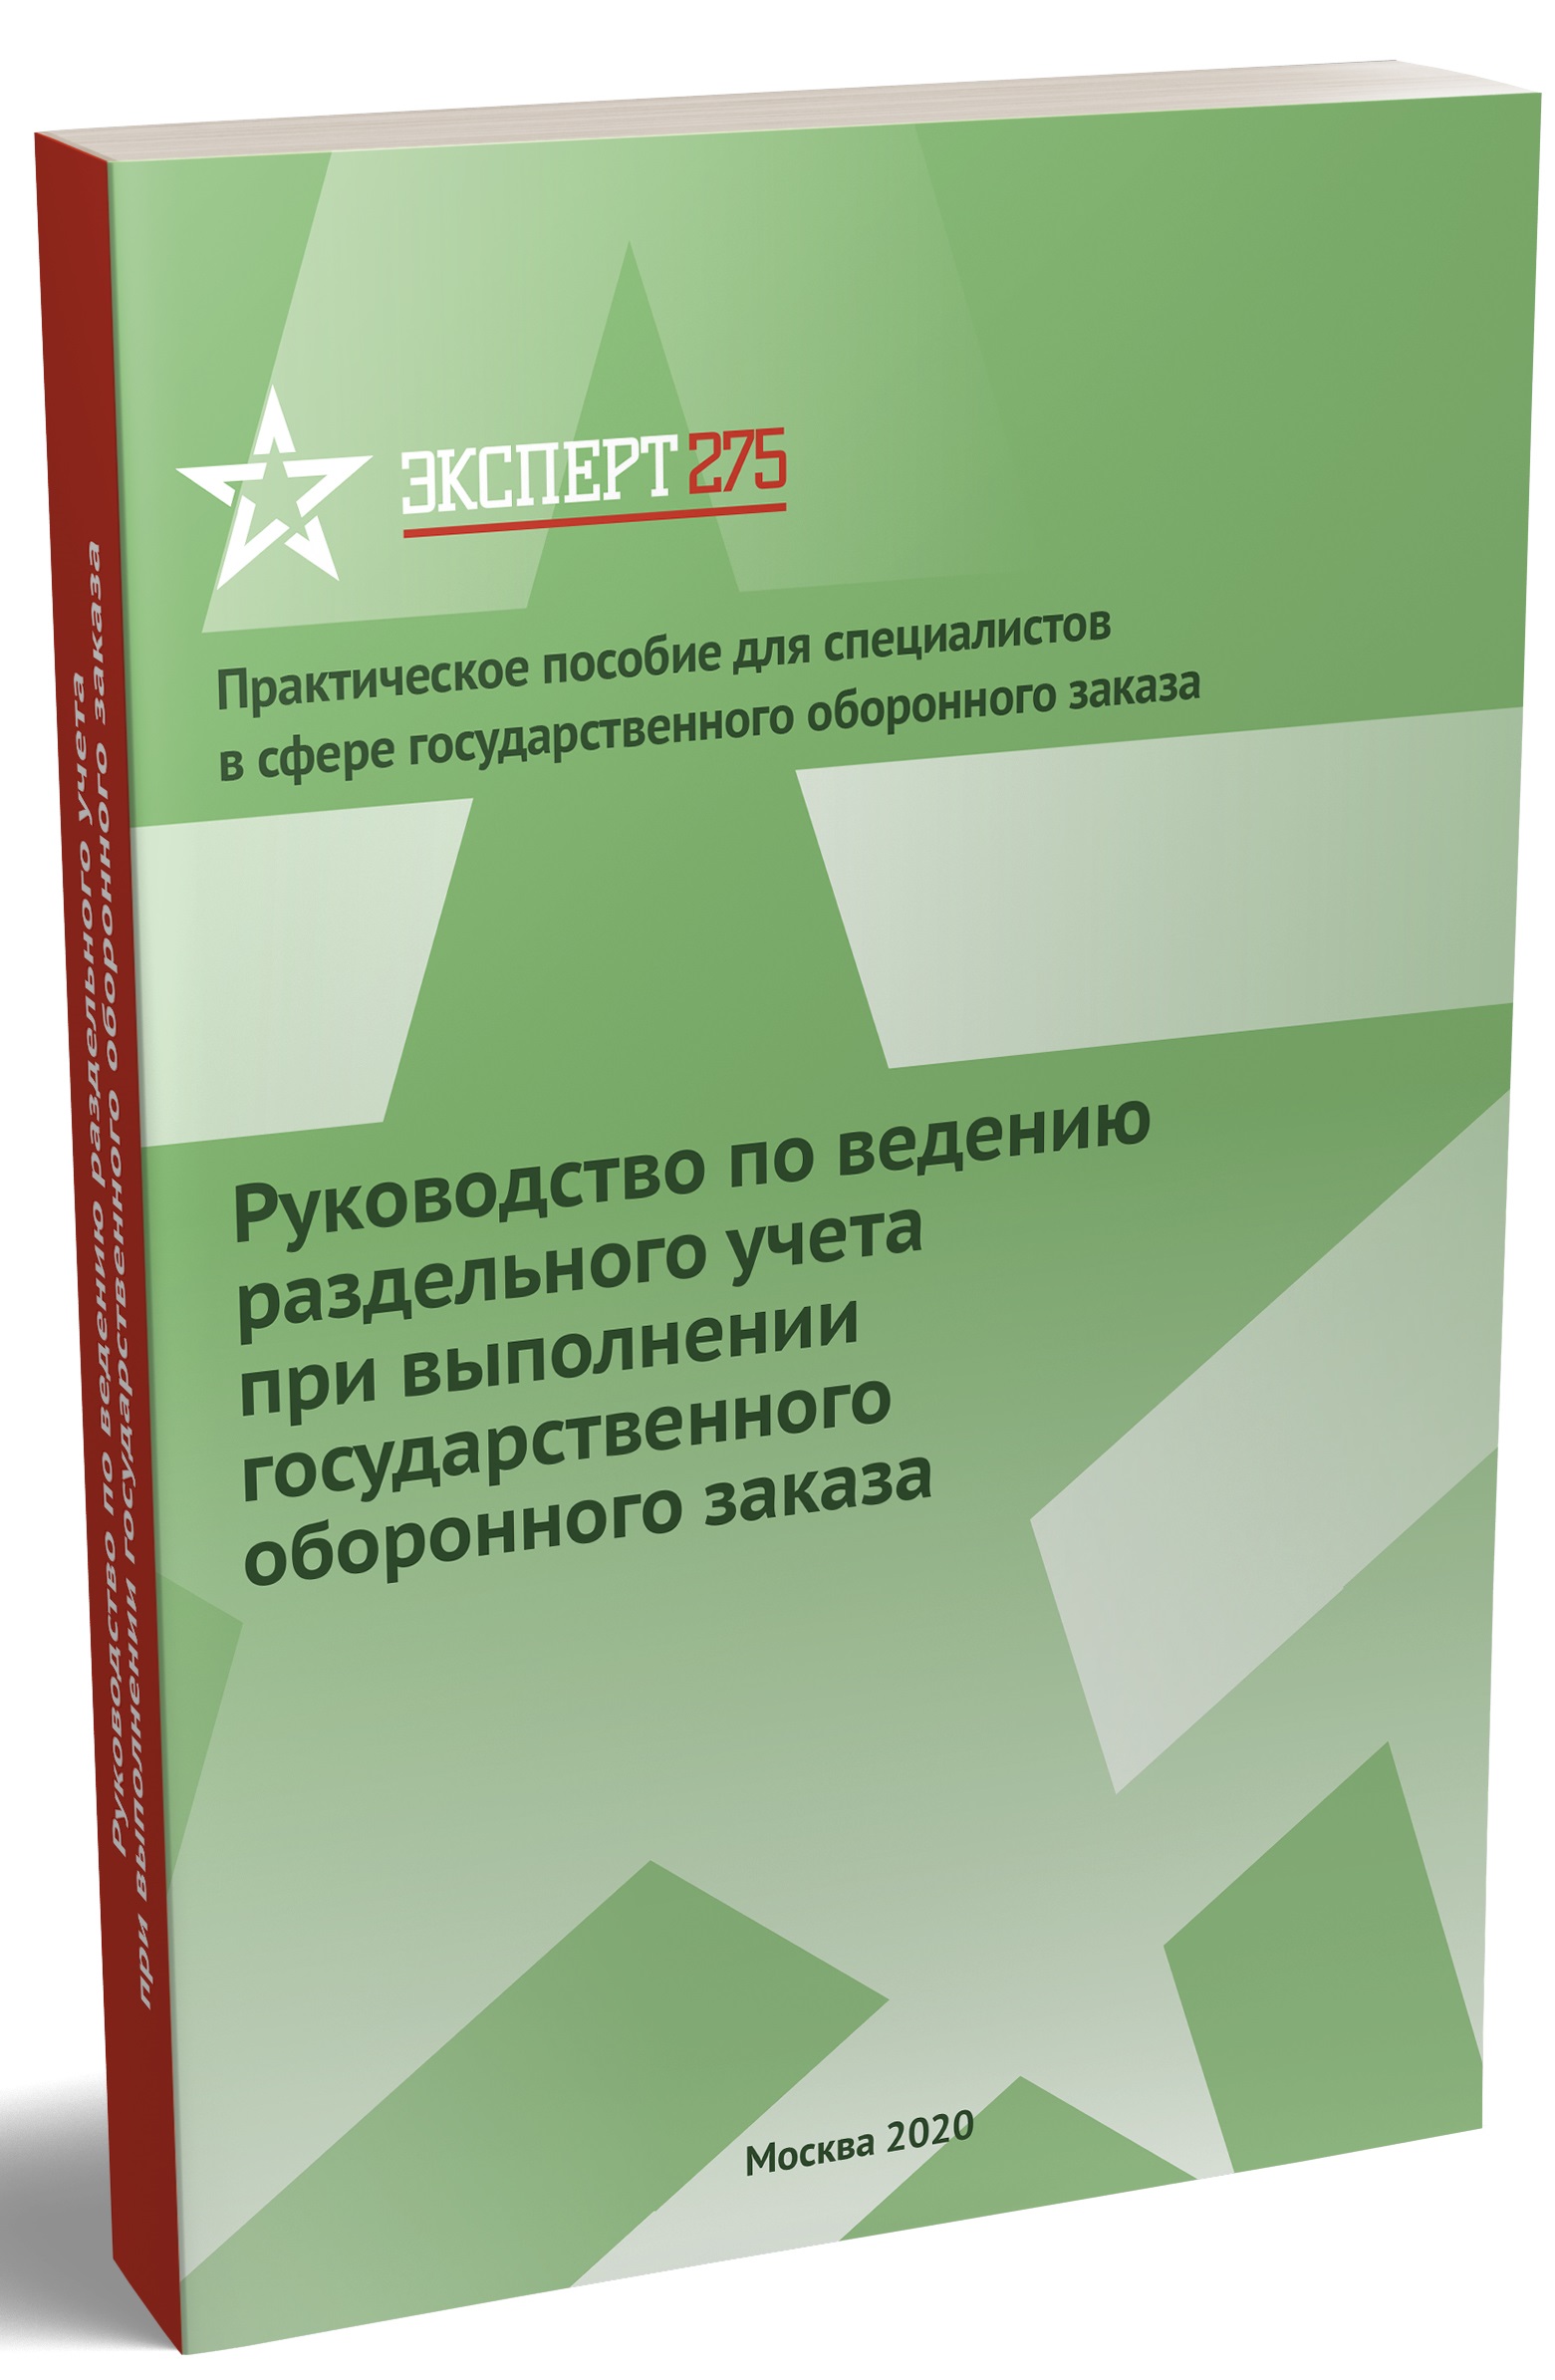 expert275book